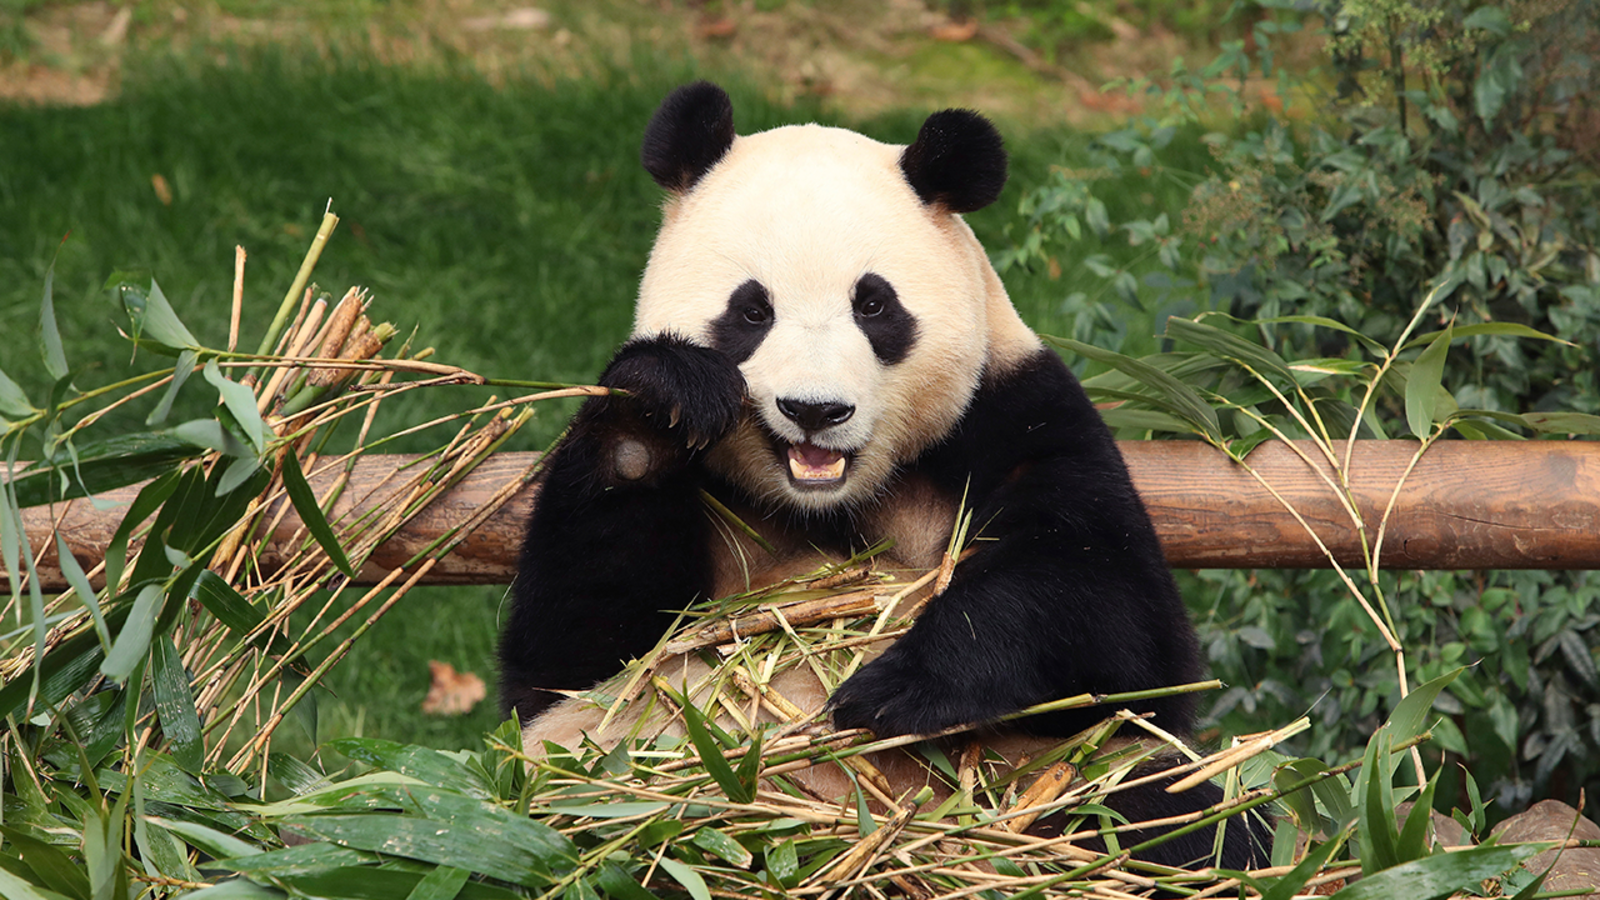 Mayor Breed's plans to bring pandas to San Francisco Zoo hits roadblock